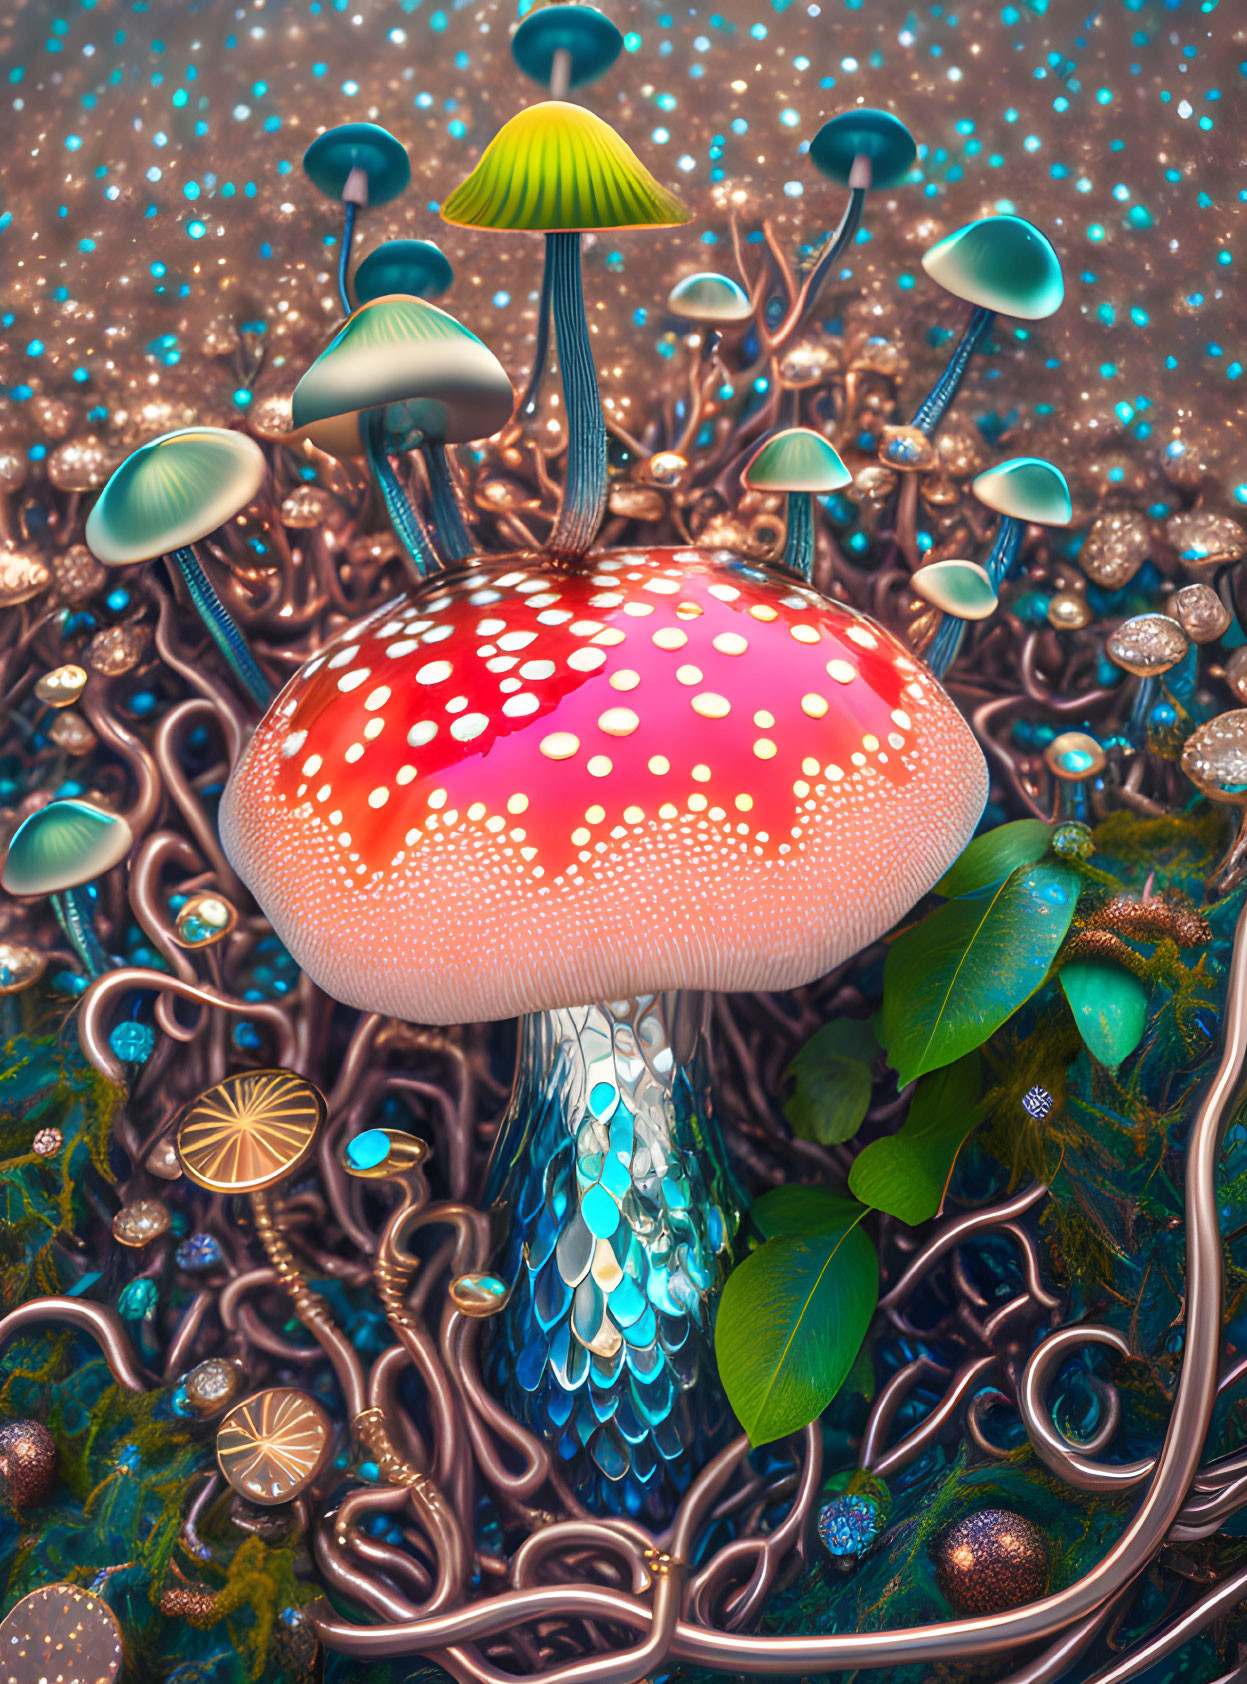 Colorful digital artwork of large red mushroom among fantastical plants